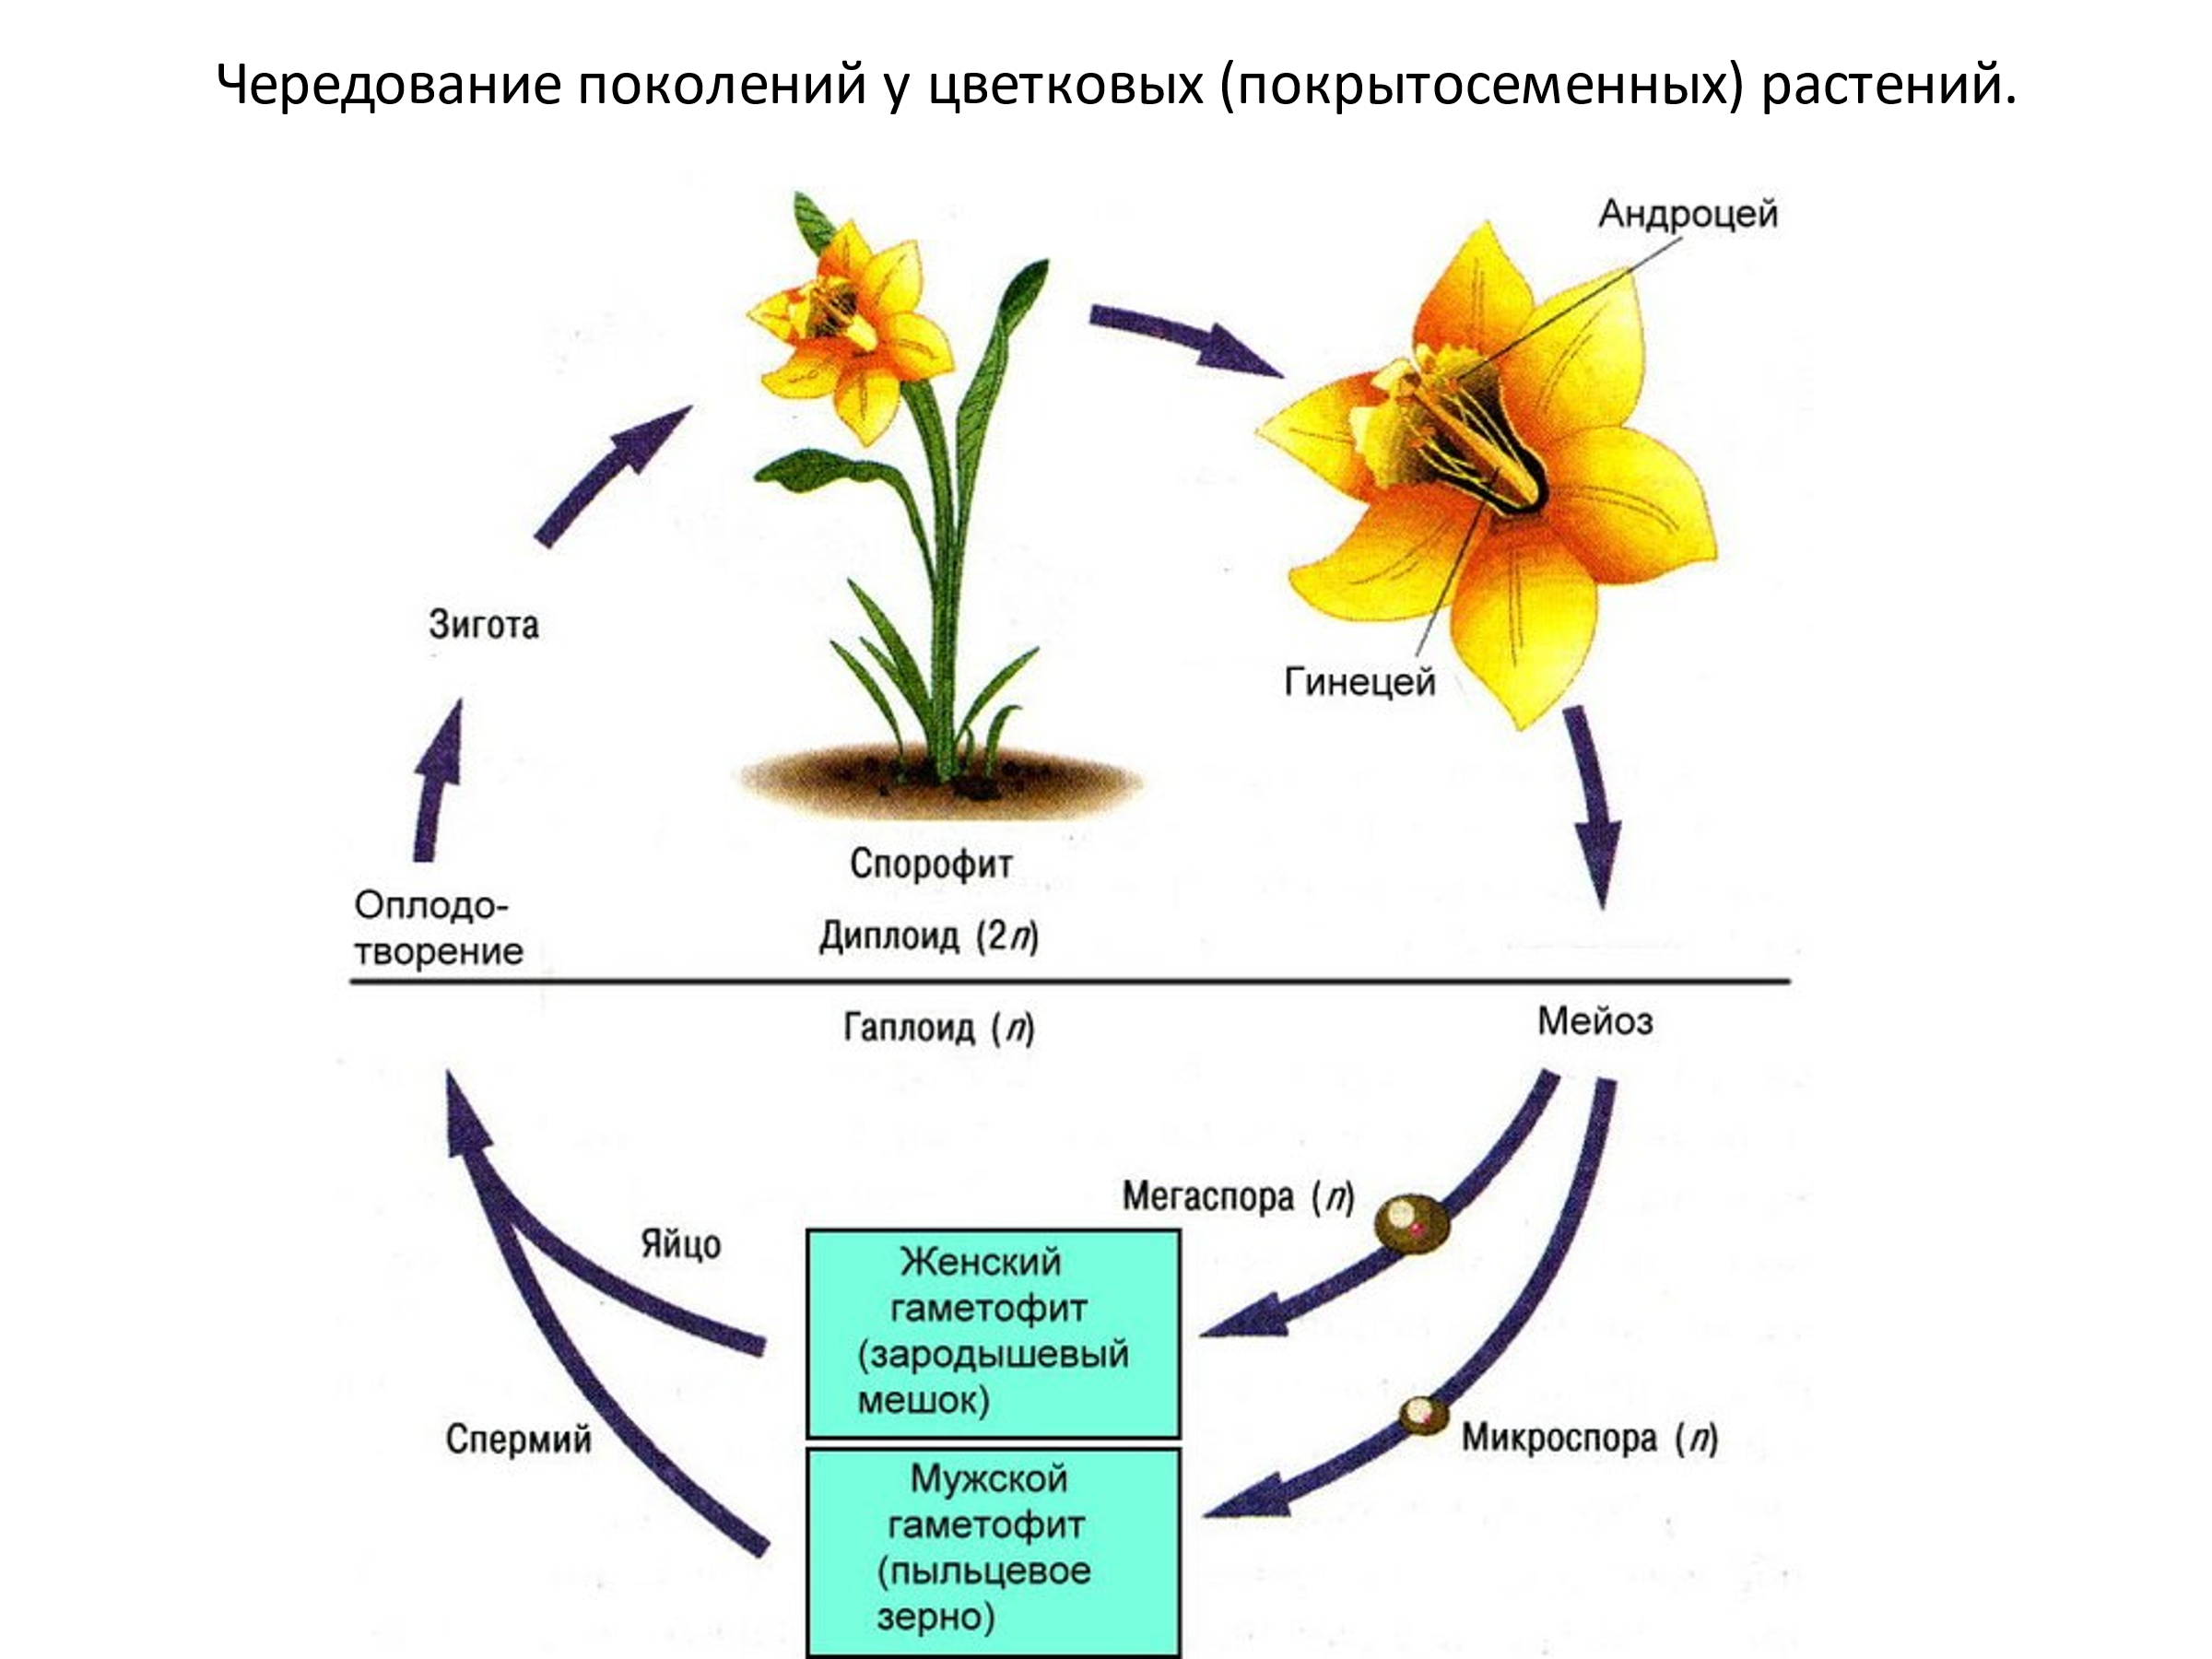 Жизненный цикл цветковых растений гаметофит. Стадии жизненного цикла цветковых растений. Цикл размножения покрытосеменных. Гаметофит и спорофит у покрытосеменных растений. Преобладание гаметофита в жизненном